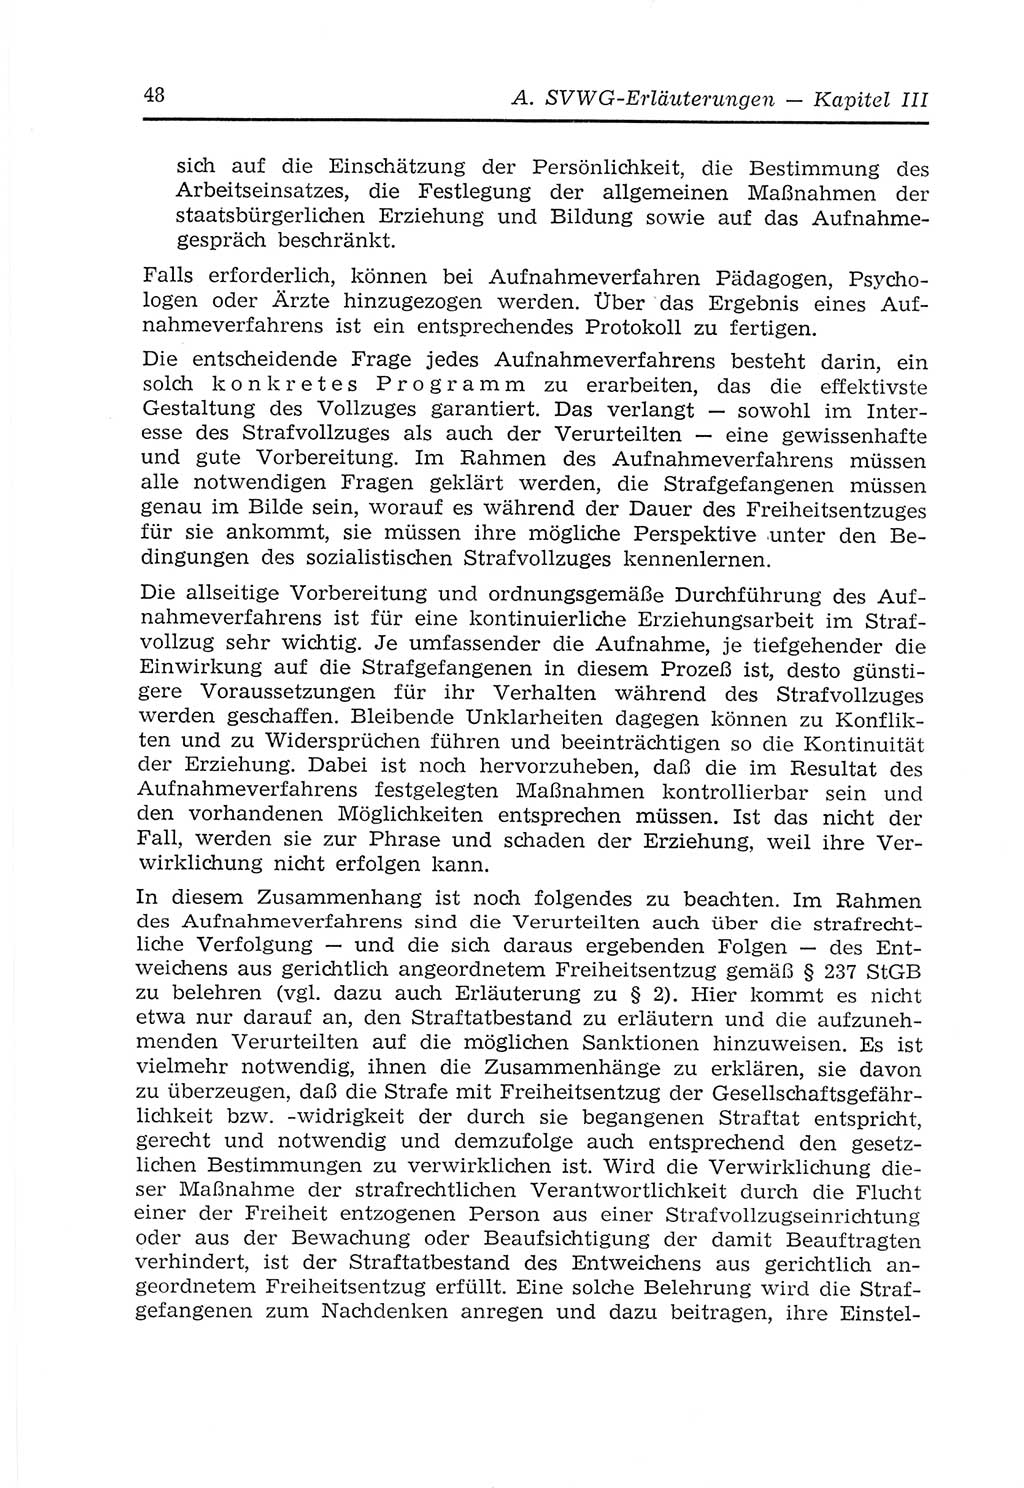 Strafvollzugs- und Wiedereingliederungsgesetz (SVWG) der Deutschen Demokratischen Republik (DDR) 1968, Seite 48 (SVWG DDR 1968, S. 48)